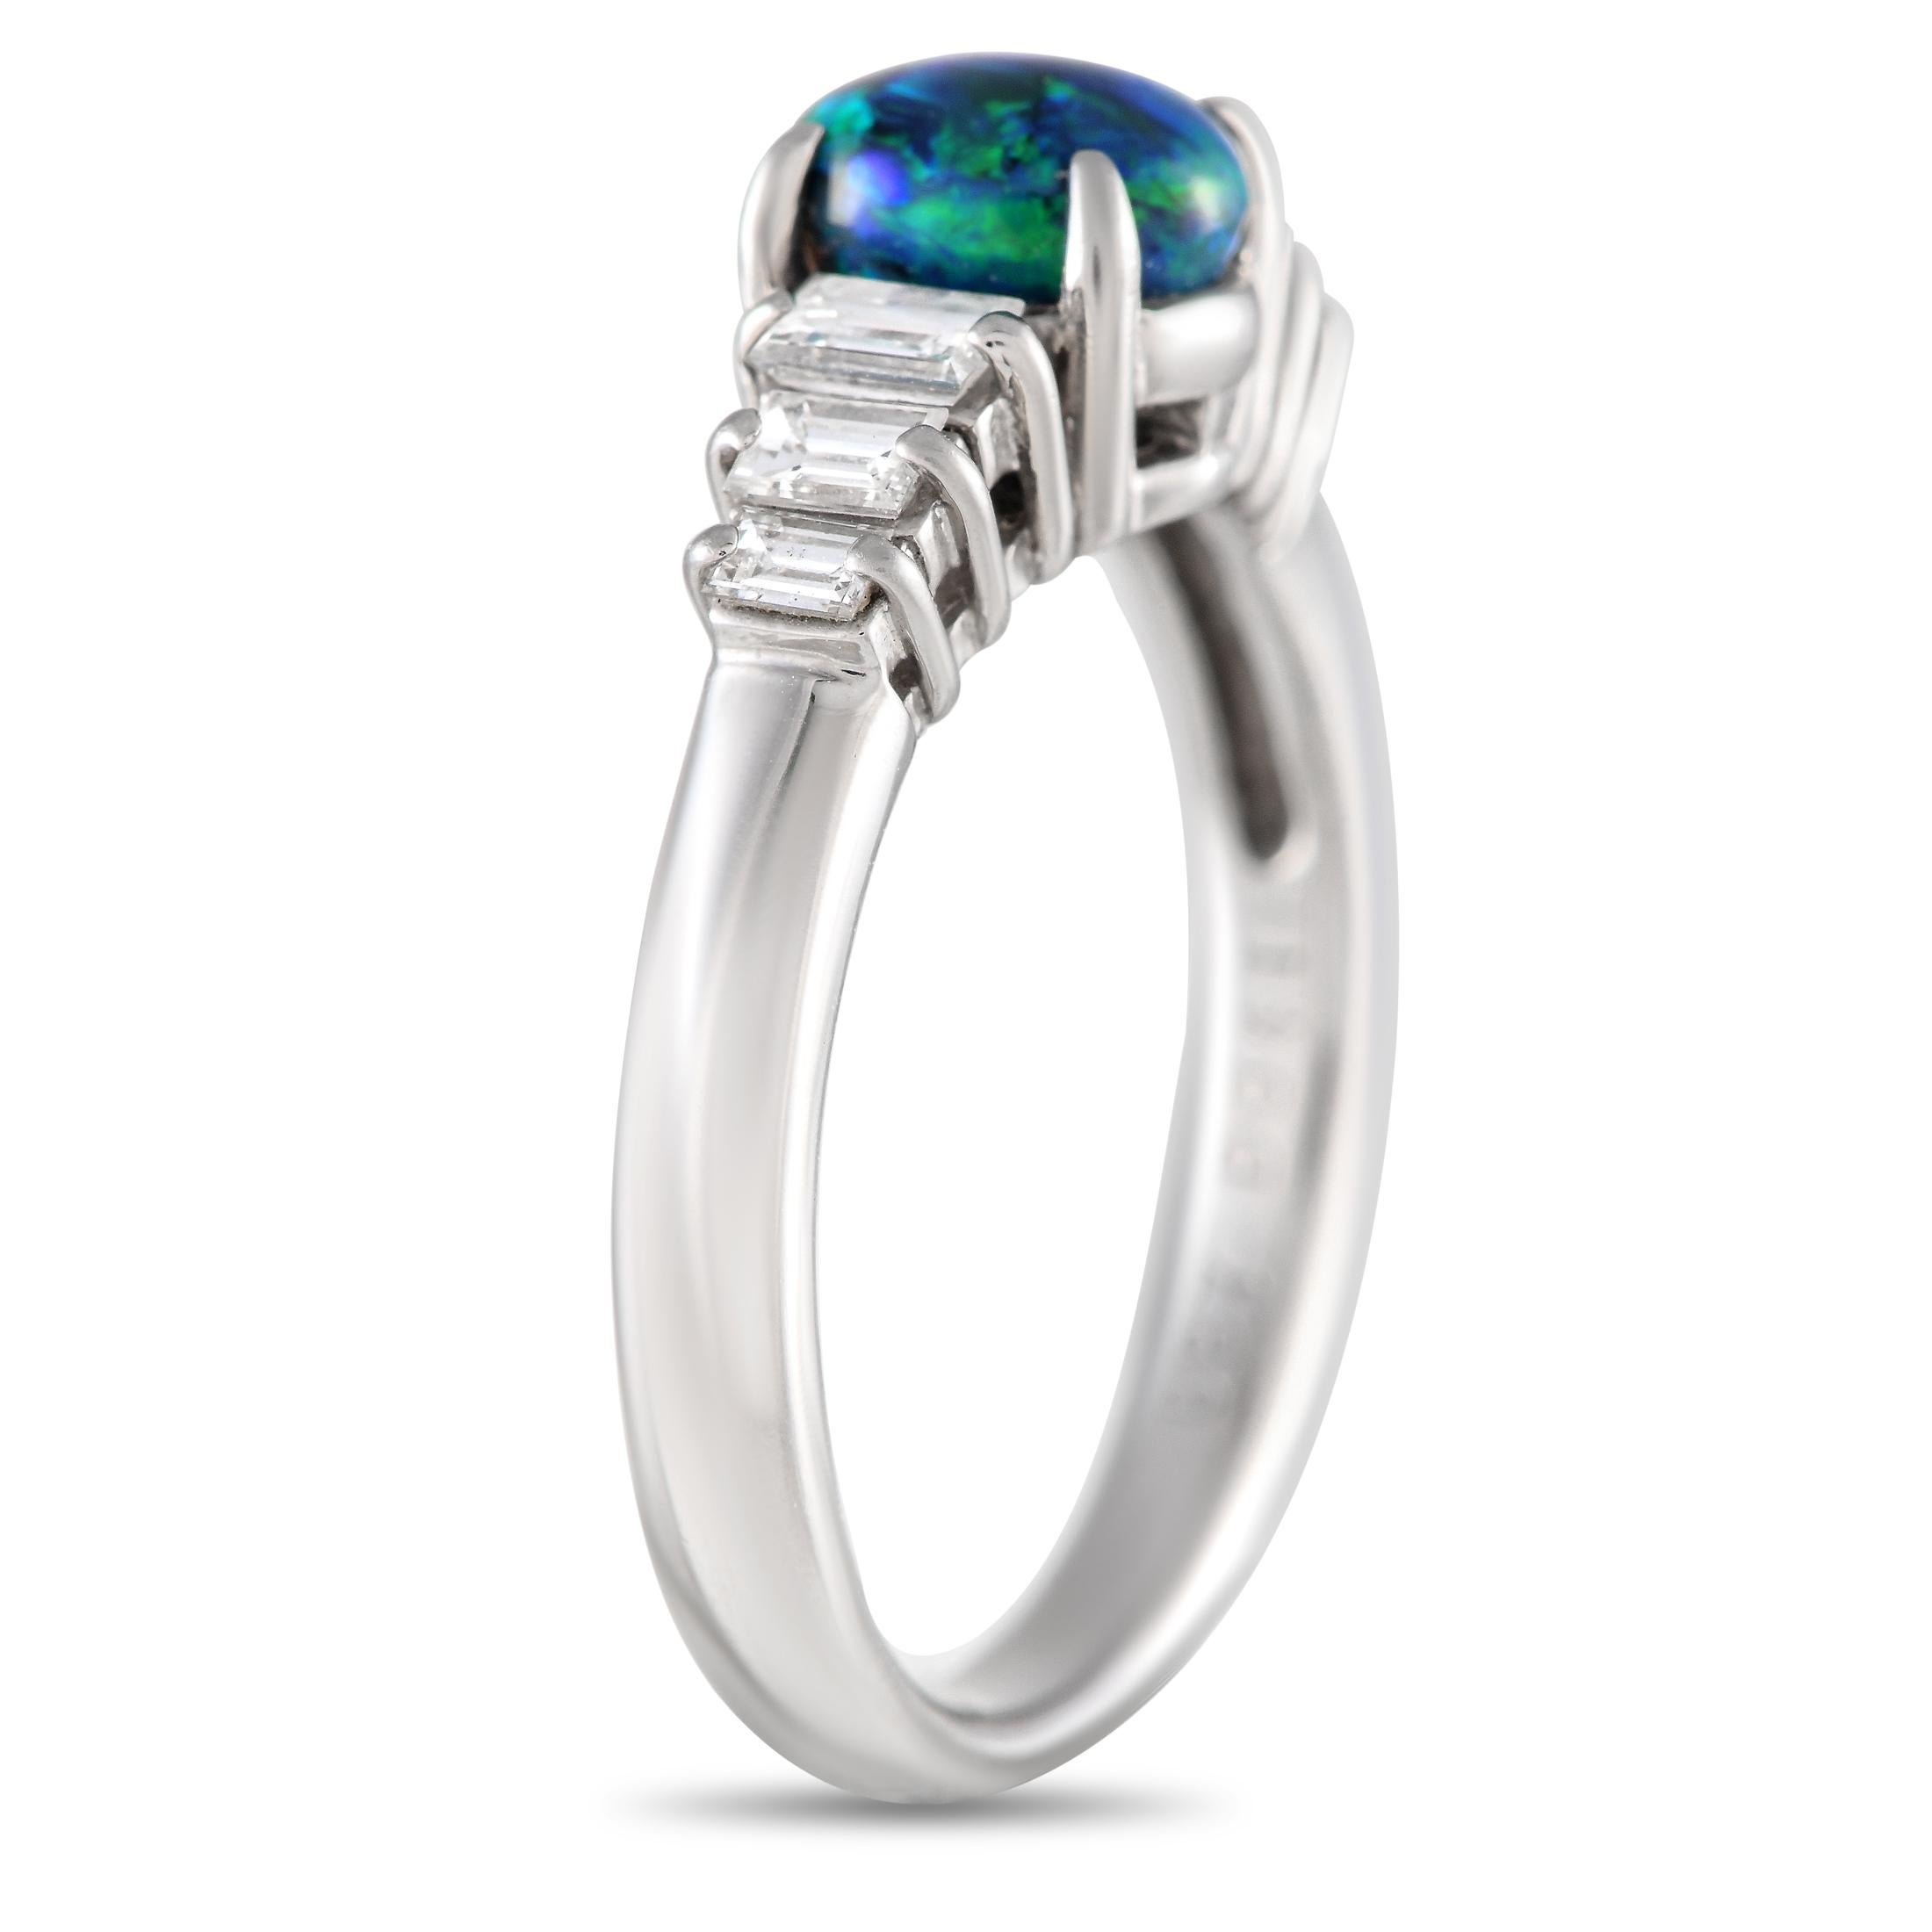 Dieser schlichte, elegante Ring wird Sie sofort in seinen Bann ziehen. Der 0,87 Karat schwere Opal in der Mitte des Steins ist dank seiner atemberaubenden Kombination aus Blau- und Grüntönen ein atemberaubender Blickfang. Diamanten mit einem